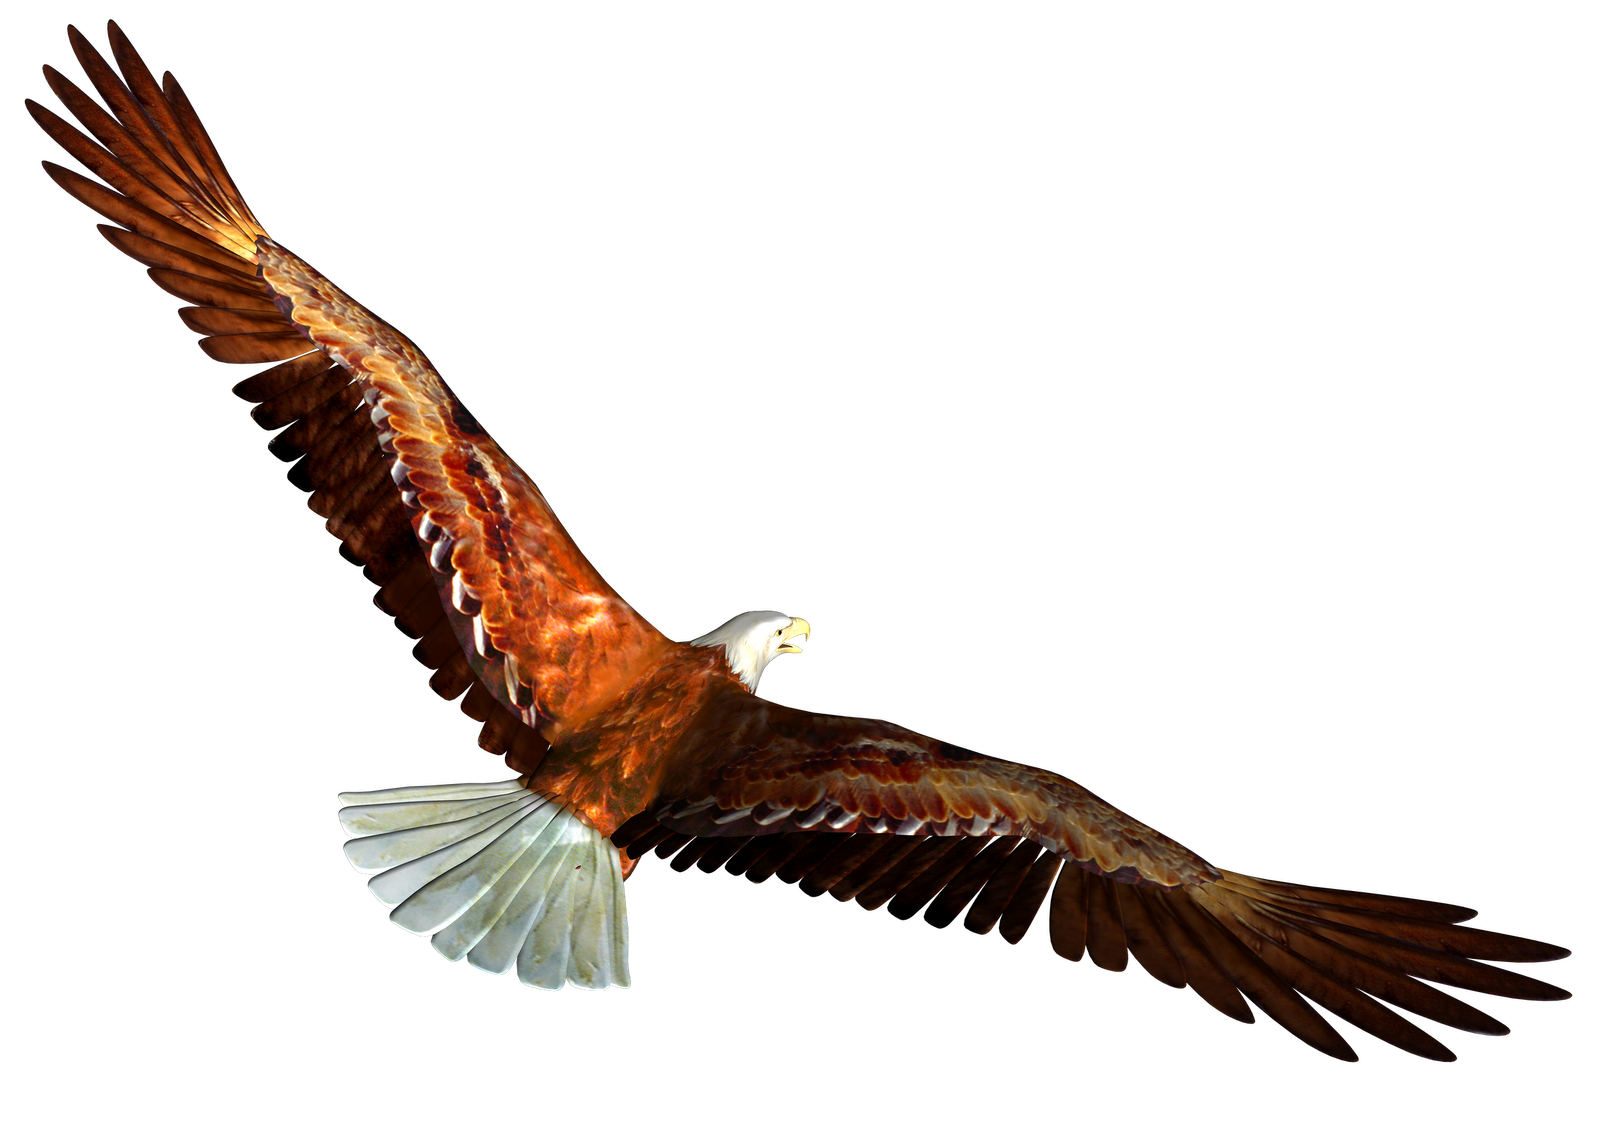 Eagle PNG Images Transparent Free Download | PNGMart.com